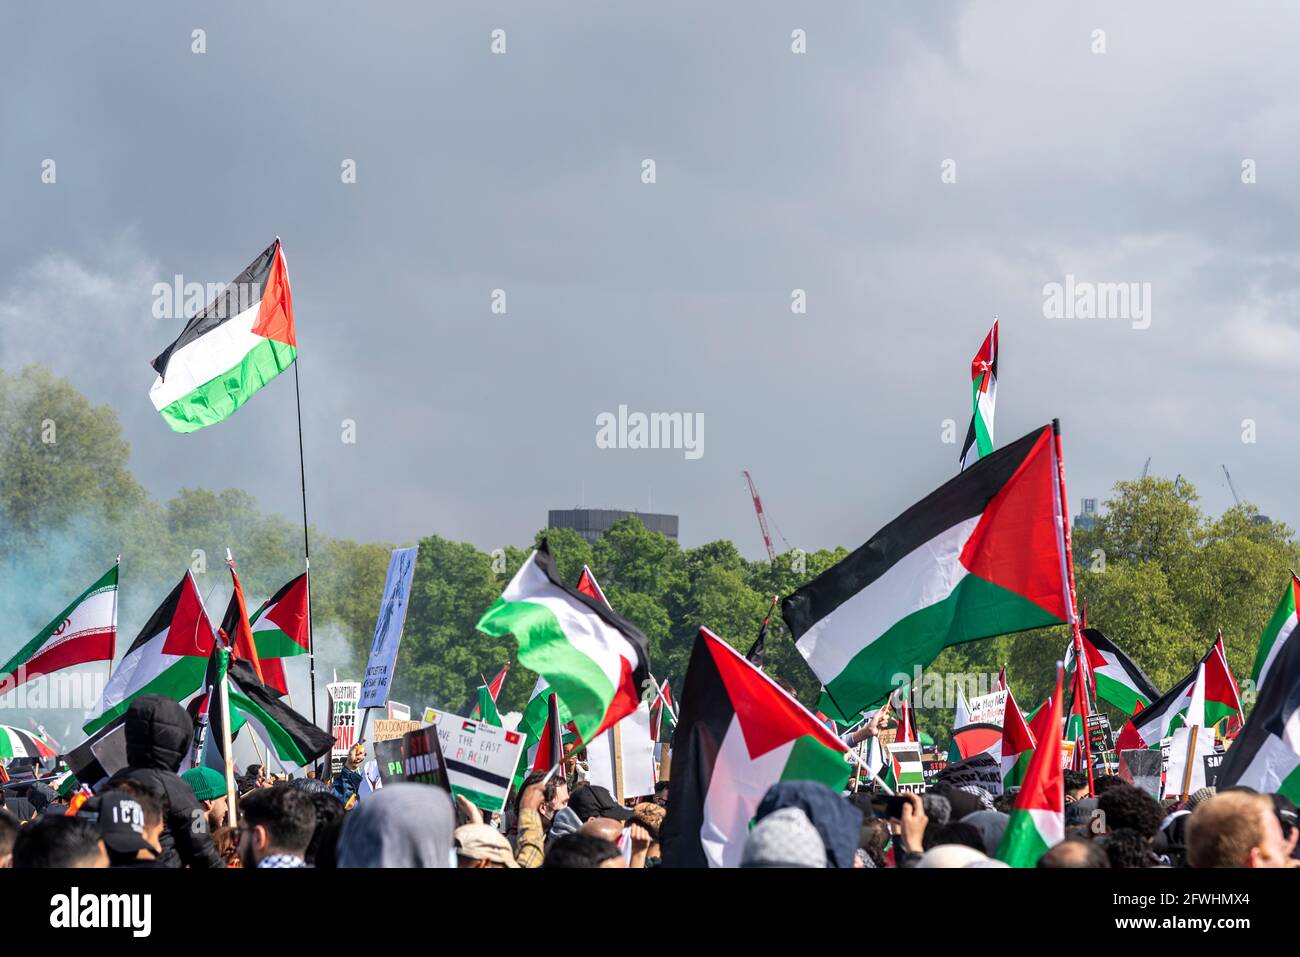 Während eines Protestes im Hyde Park, London, Großbritannien, winkten die Flaggen des Staates Palästina. Protest gegen besetzte Gebiete durch Israel. Freier Palästina-marsch Stockfoto